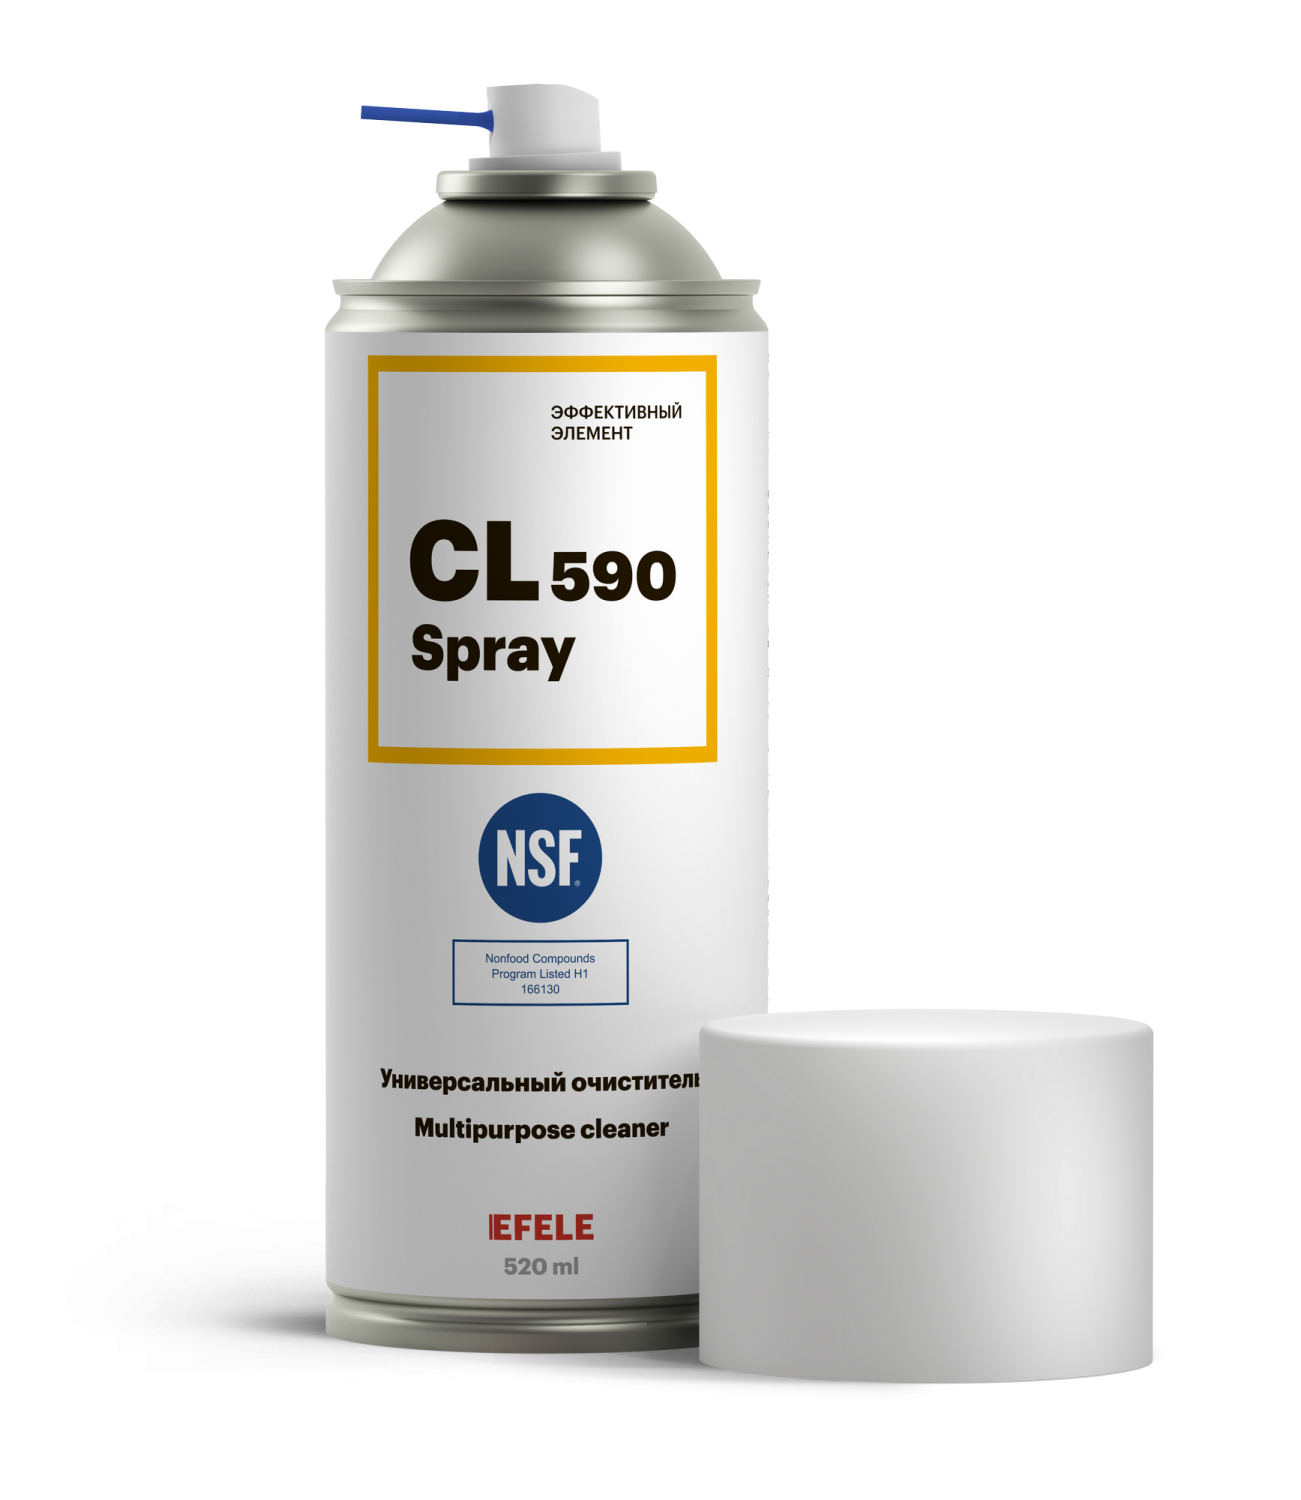 фото Универсальный очиститель efele cl-590 spray с пищевым допуском nsf h1 (520 мл)